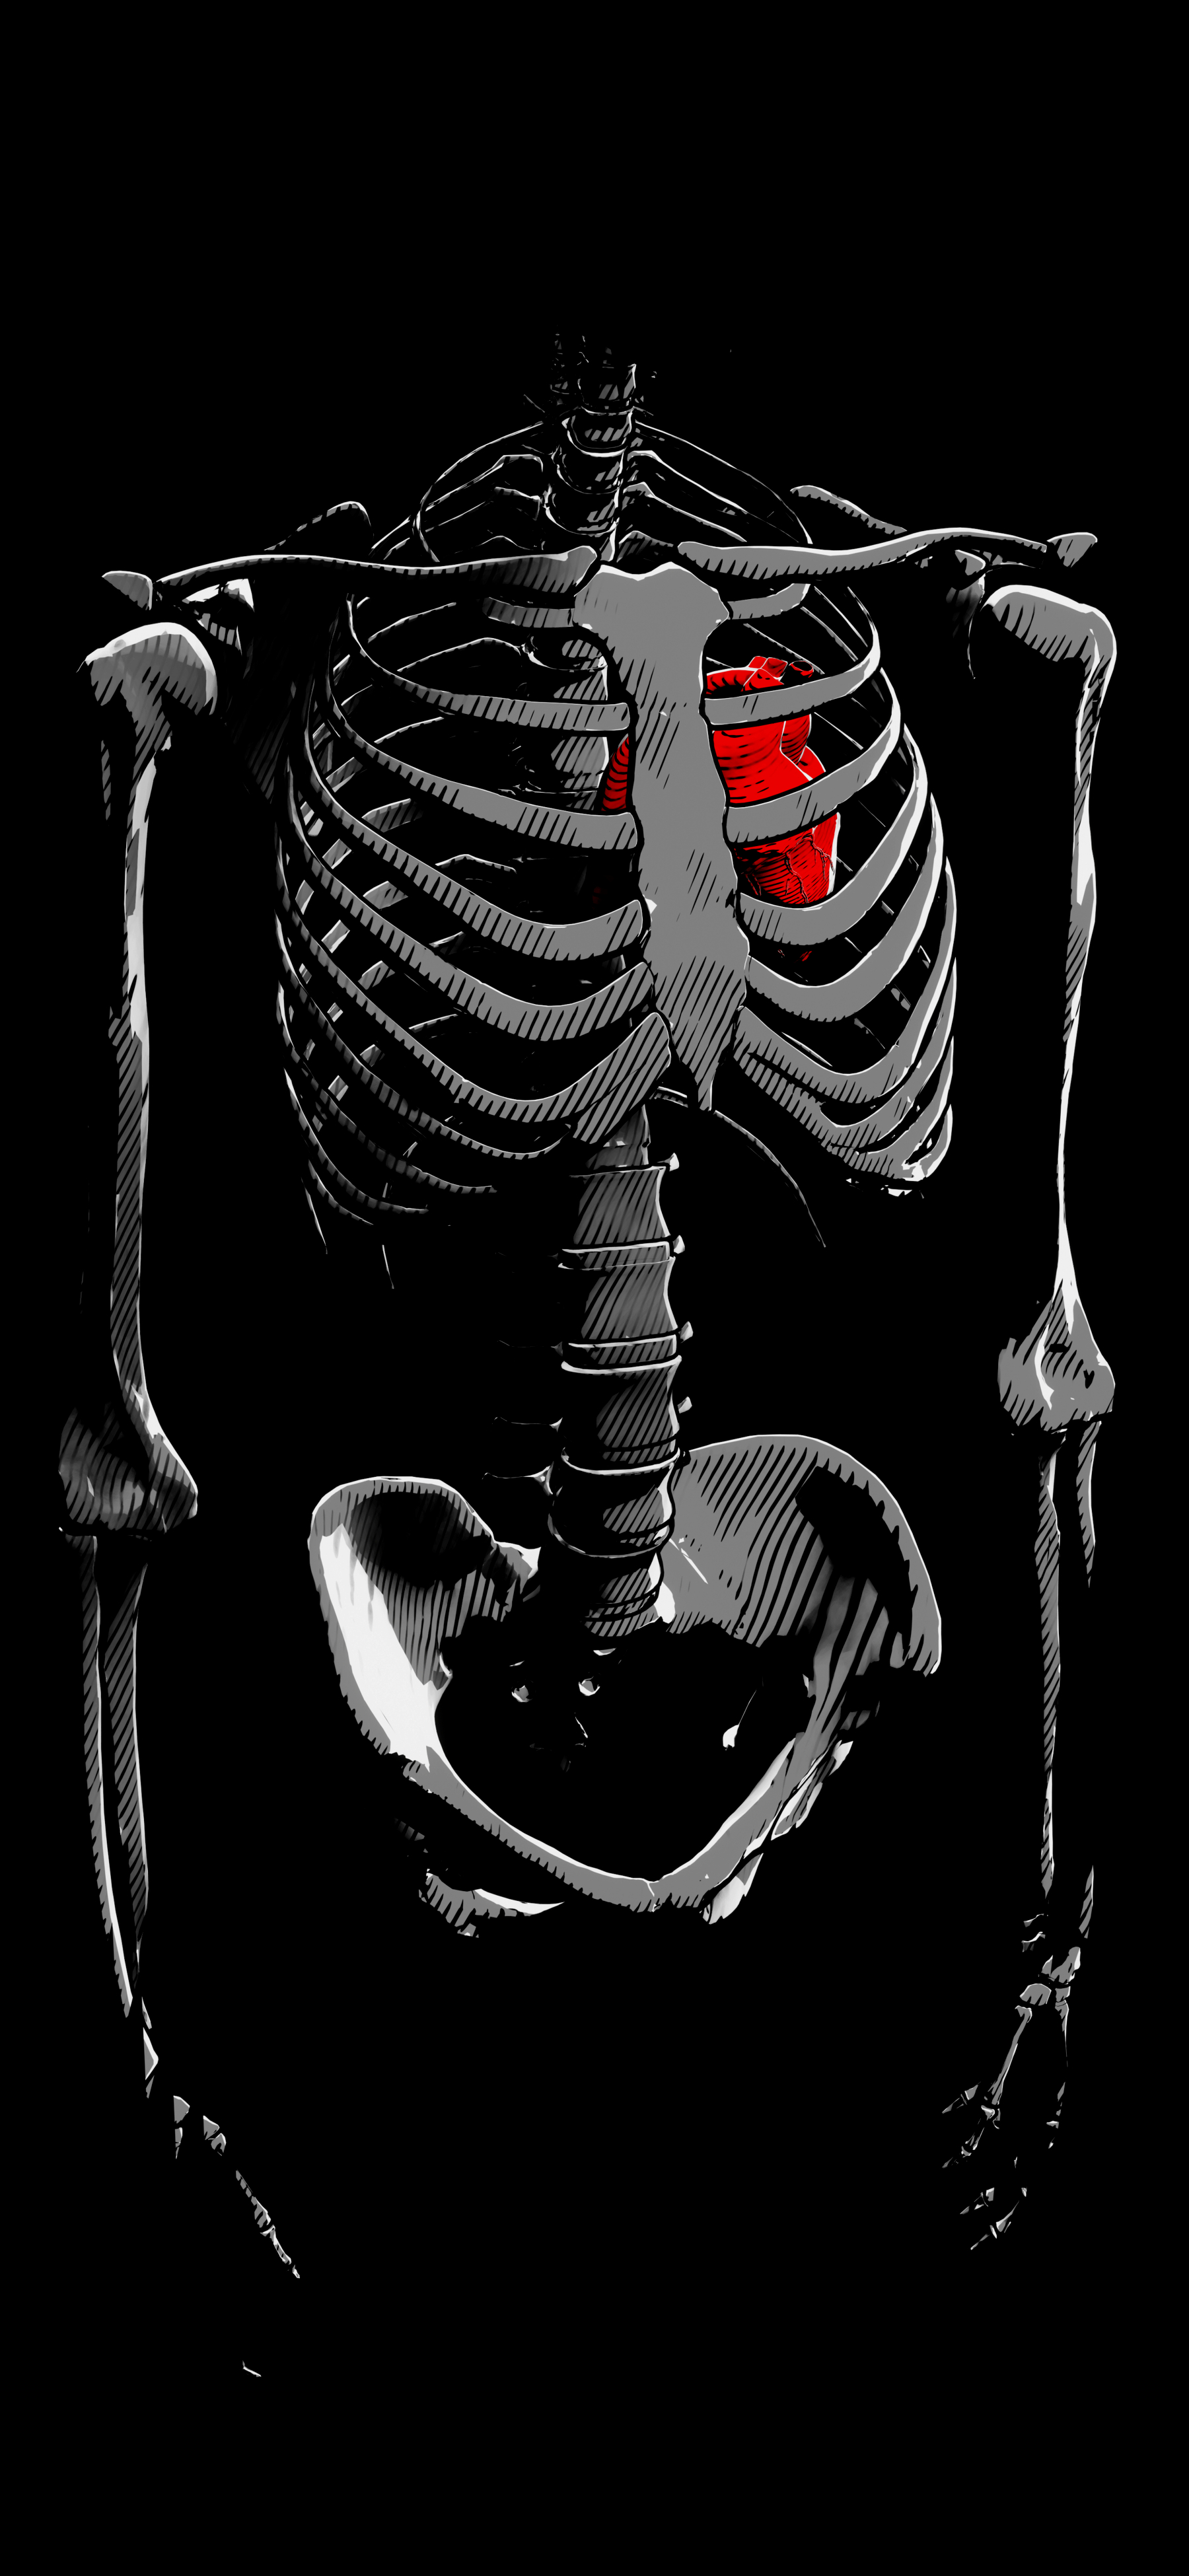 Обои на телефон скелет с сердцем